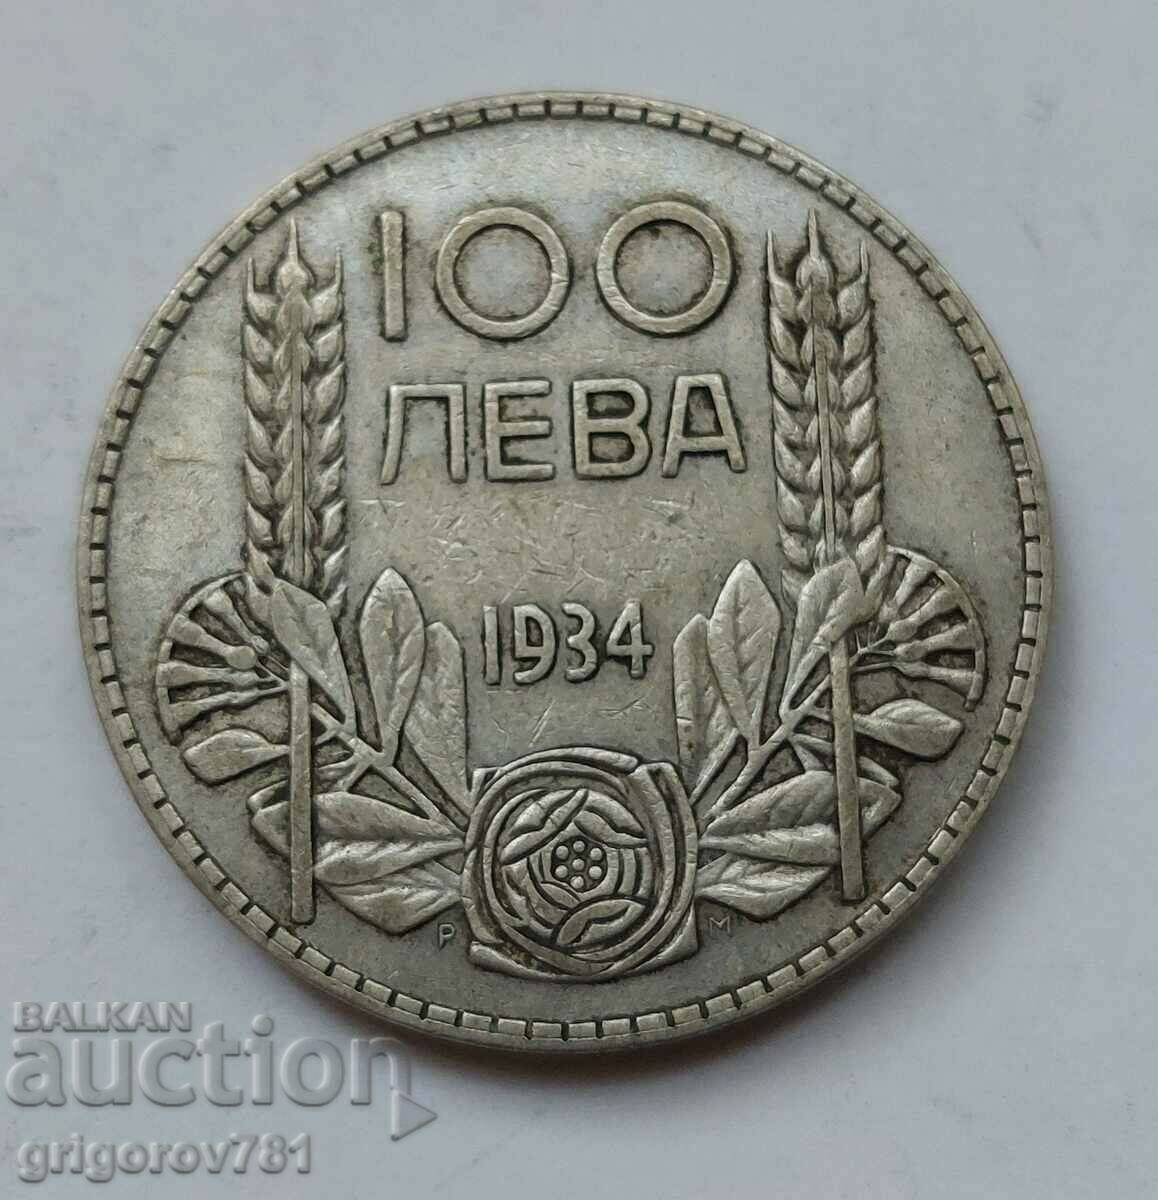 100 leva silver Bulgaria 1934 - silver coin #61